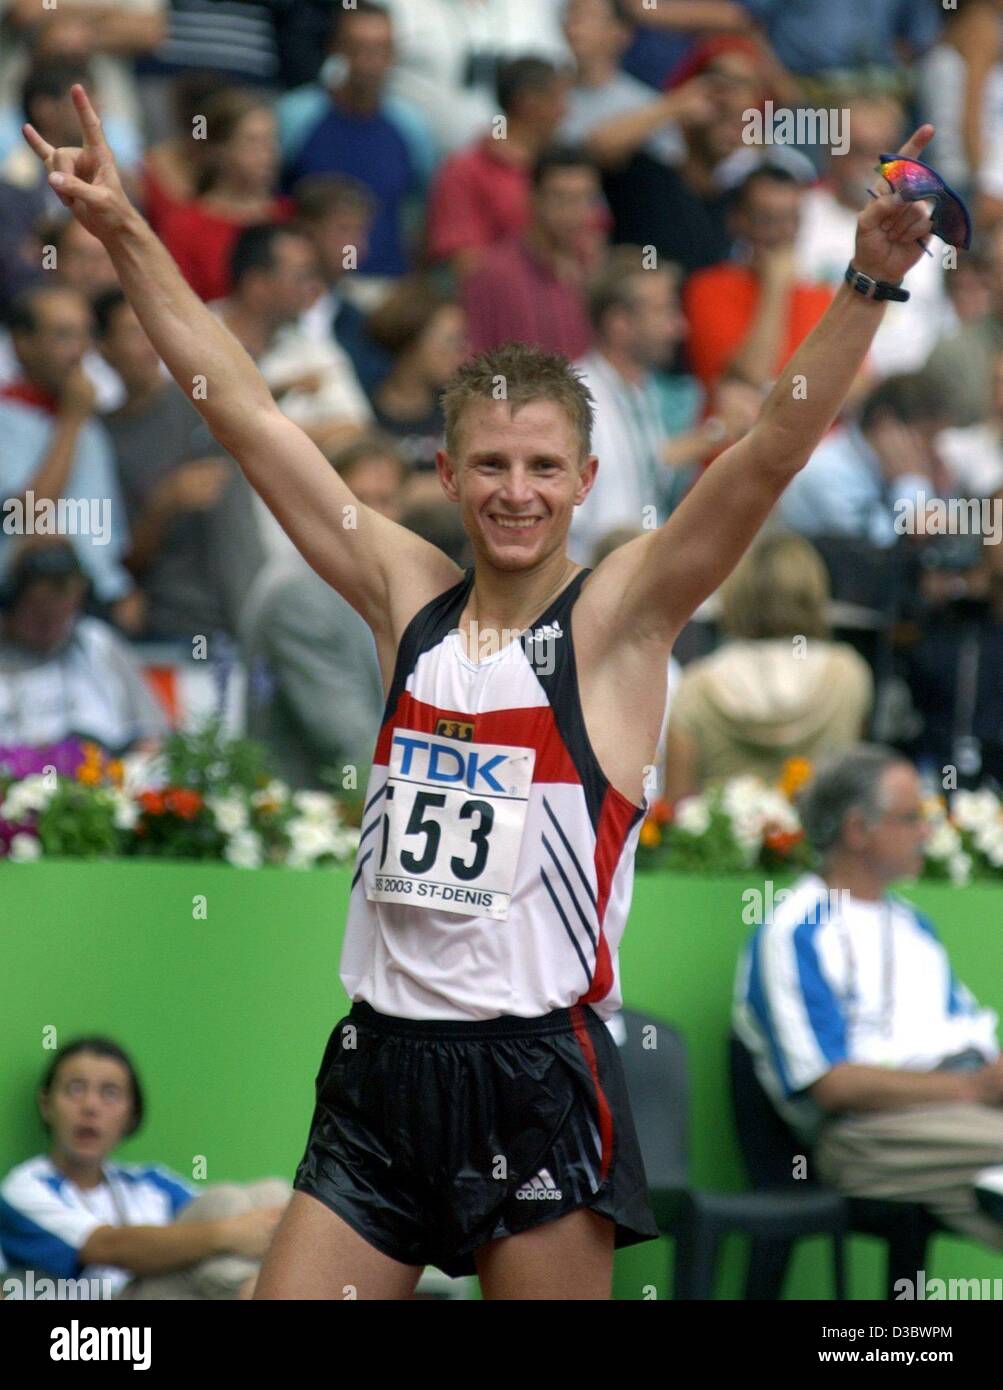 (Dpa) - atleta alemán Andreas Erm cheers después del hombre de 50 km de caminata en el 9º Campeonato Mundial de Atletismo de la IAAF en el Stade de France, en París, el 27 de agosto de 2003. Él gana el Bronce con 3:37:46 horas. Foto de stock